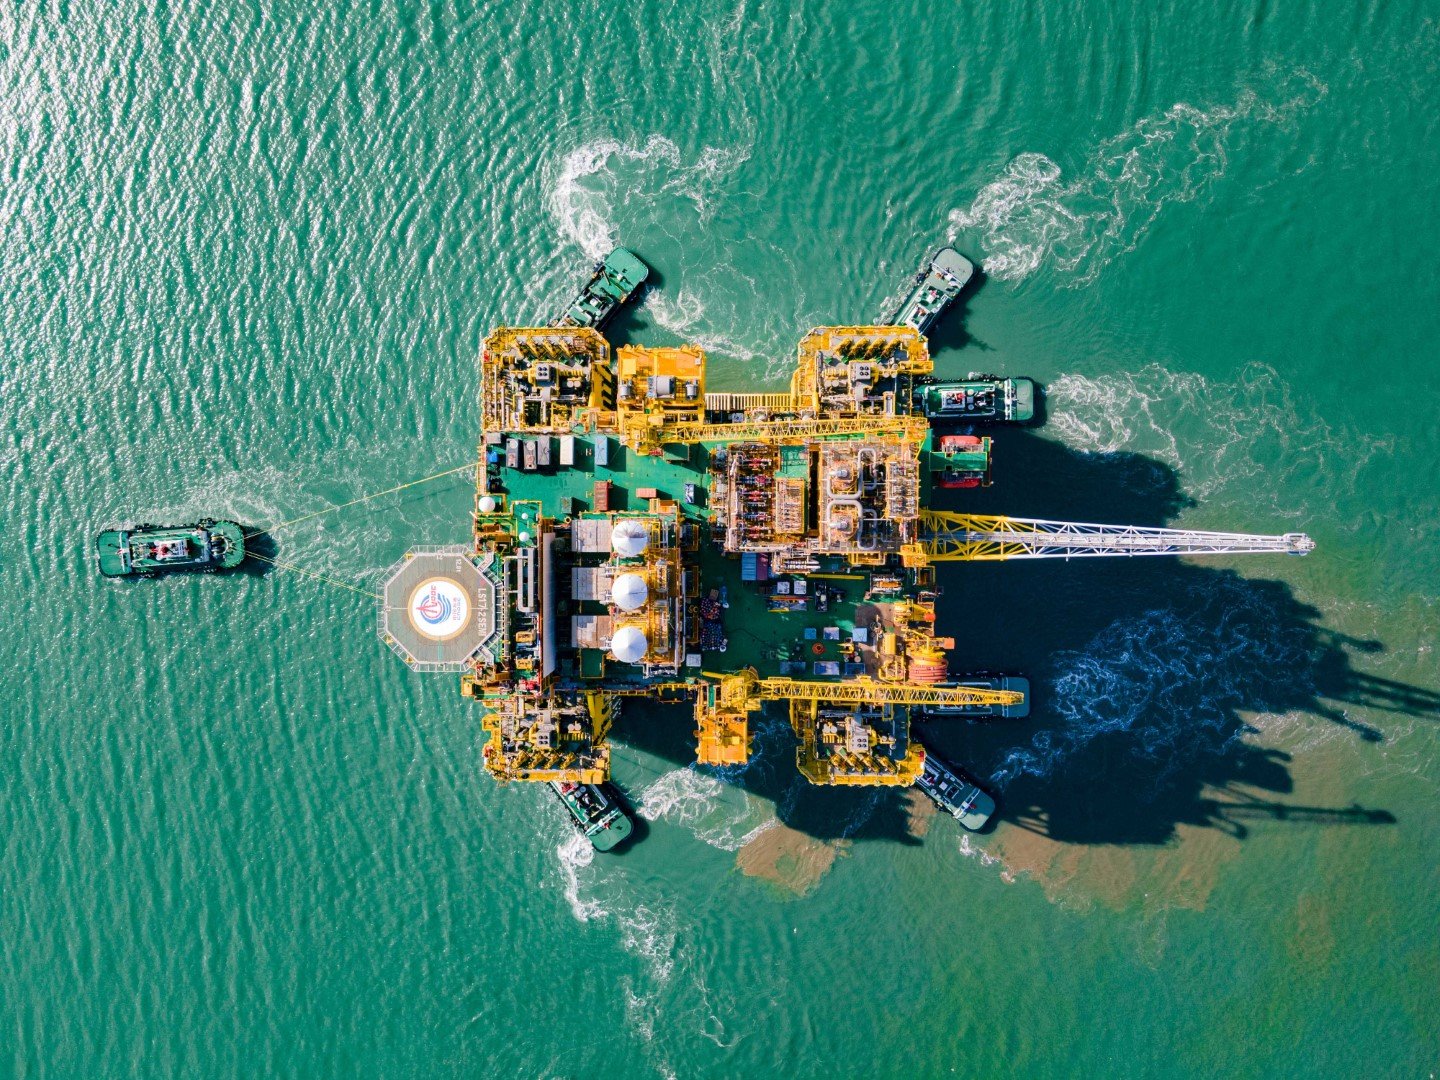 Най-големият офшорен производител на петрол и газ в Китай - държавната CNOOC Ltd. (China National Offshore Oil Corporation)